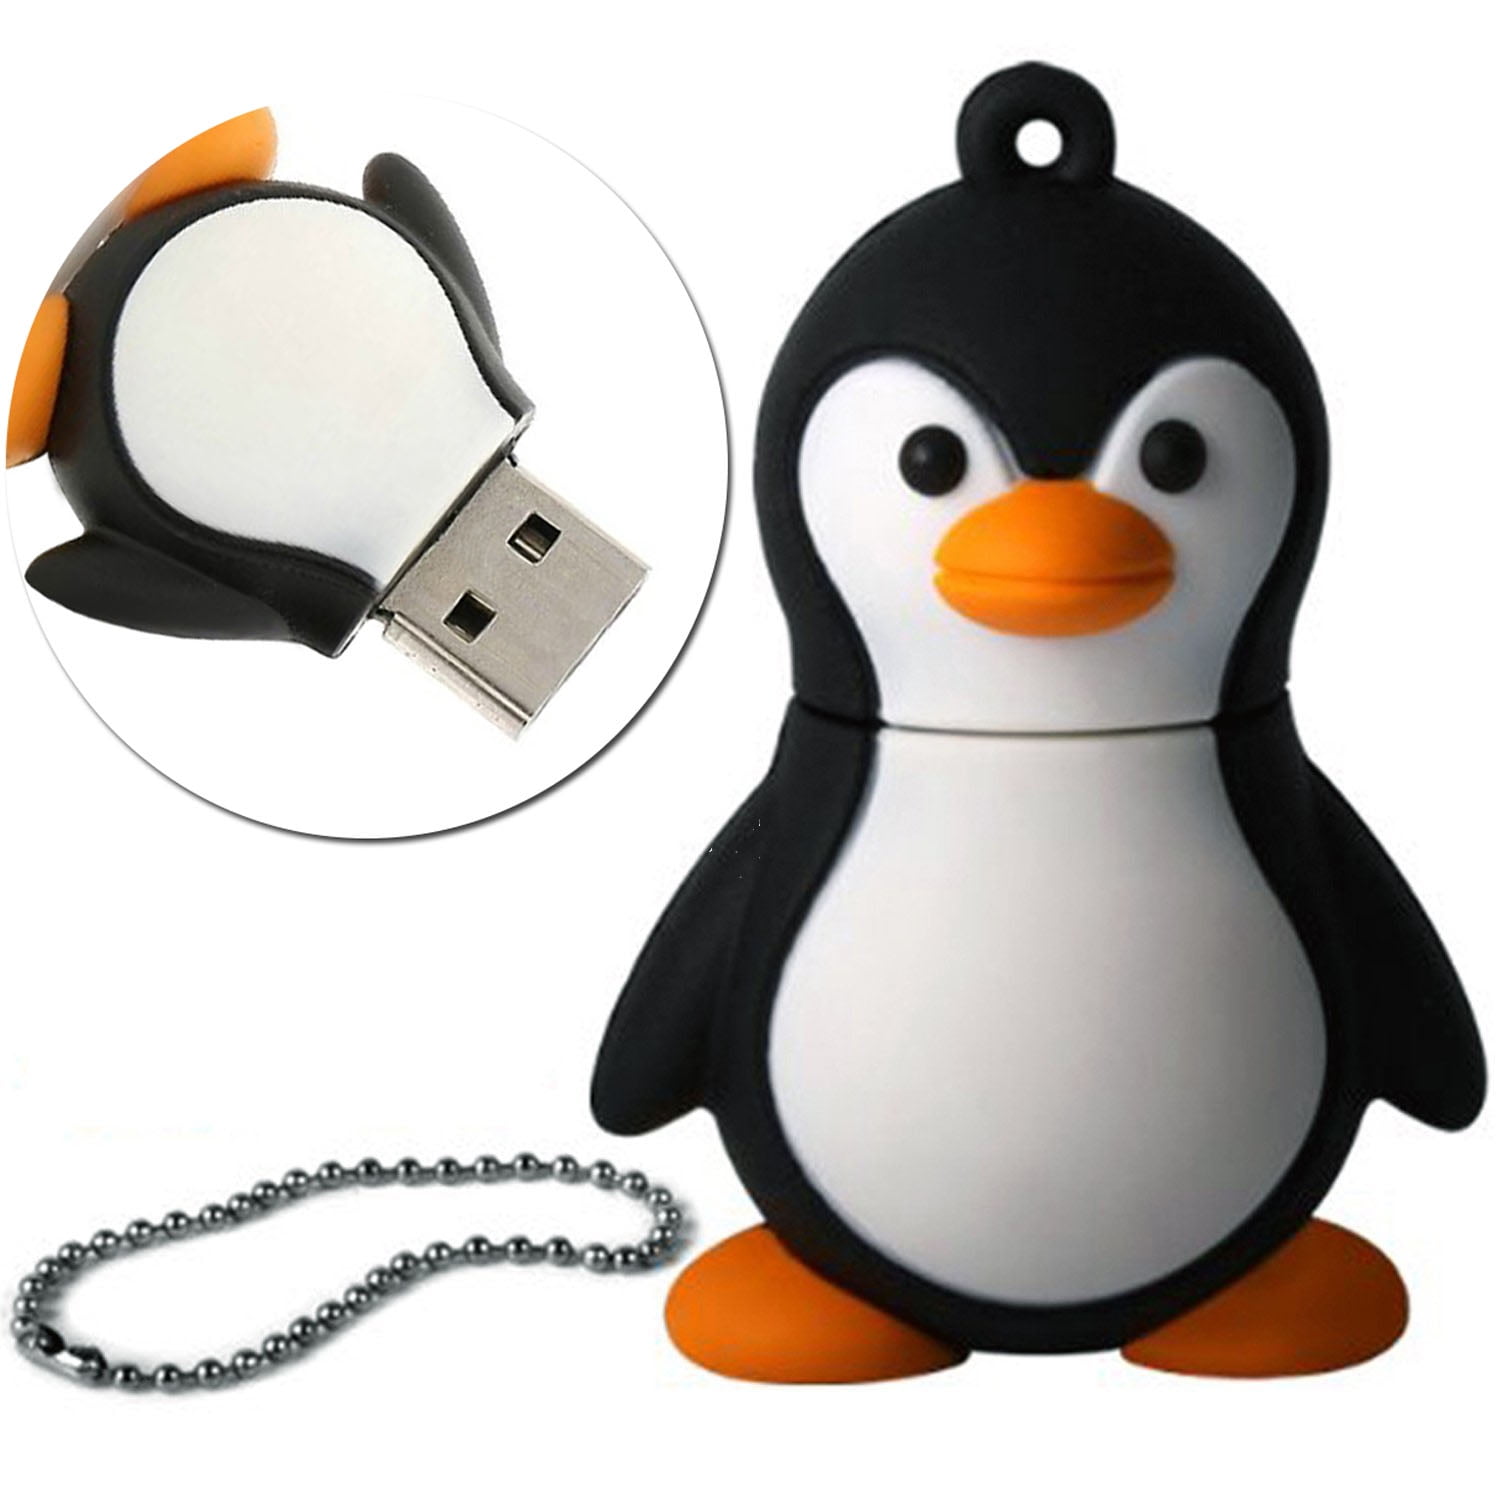 32GB USB 2.0 Flash Drive Cartoon Thumb Drive Memory Stick -